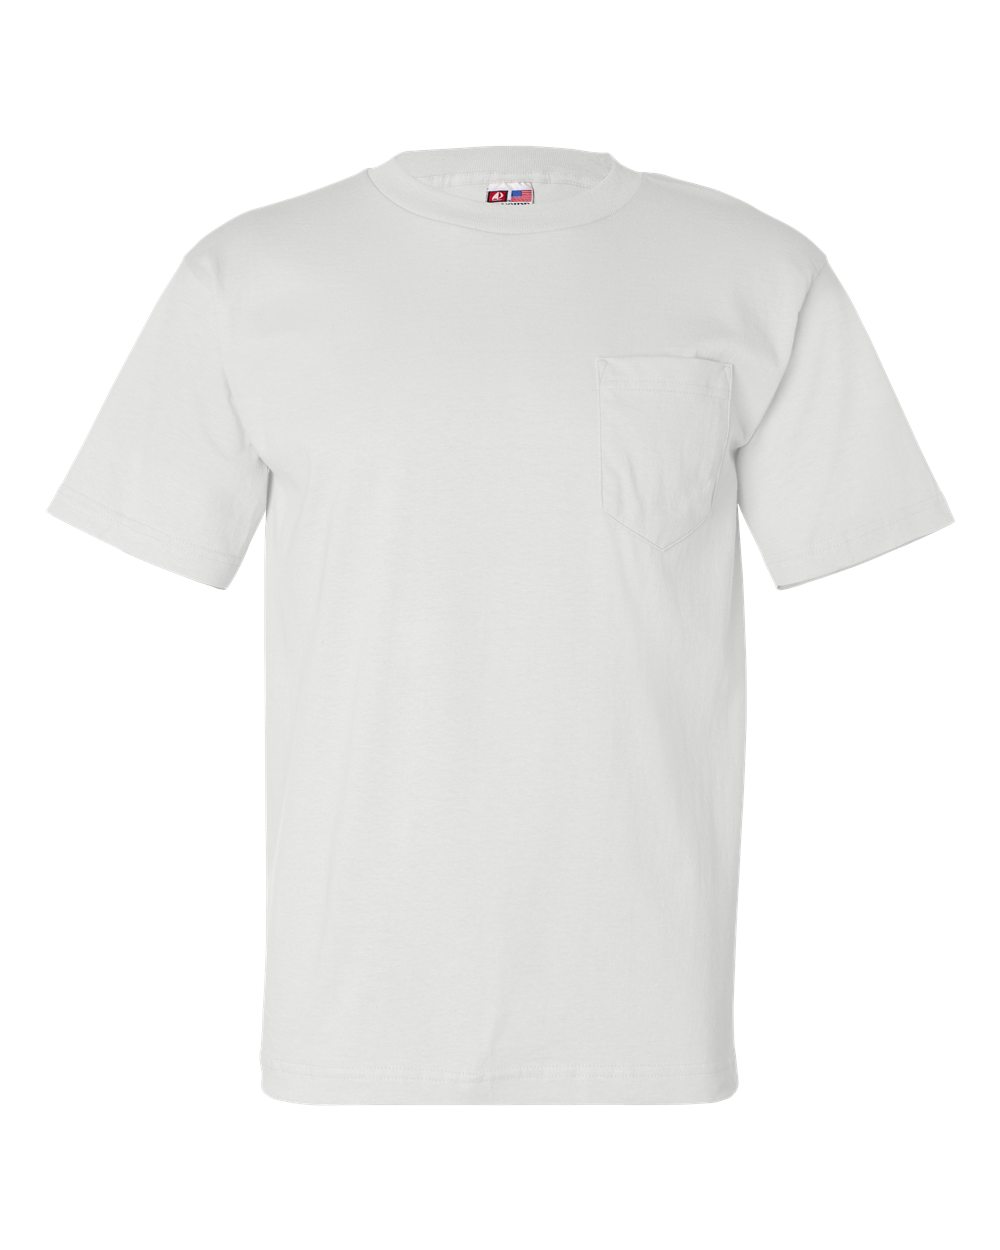 investering skrive et brev Fremhævet USA-Made T-Shirt with a Pocket - Bayside 7100 | Clothing Shop Online